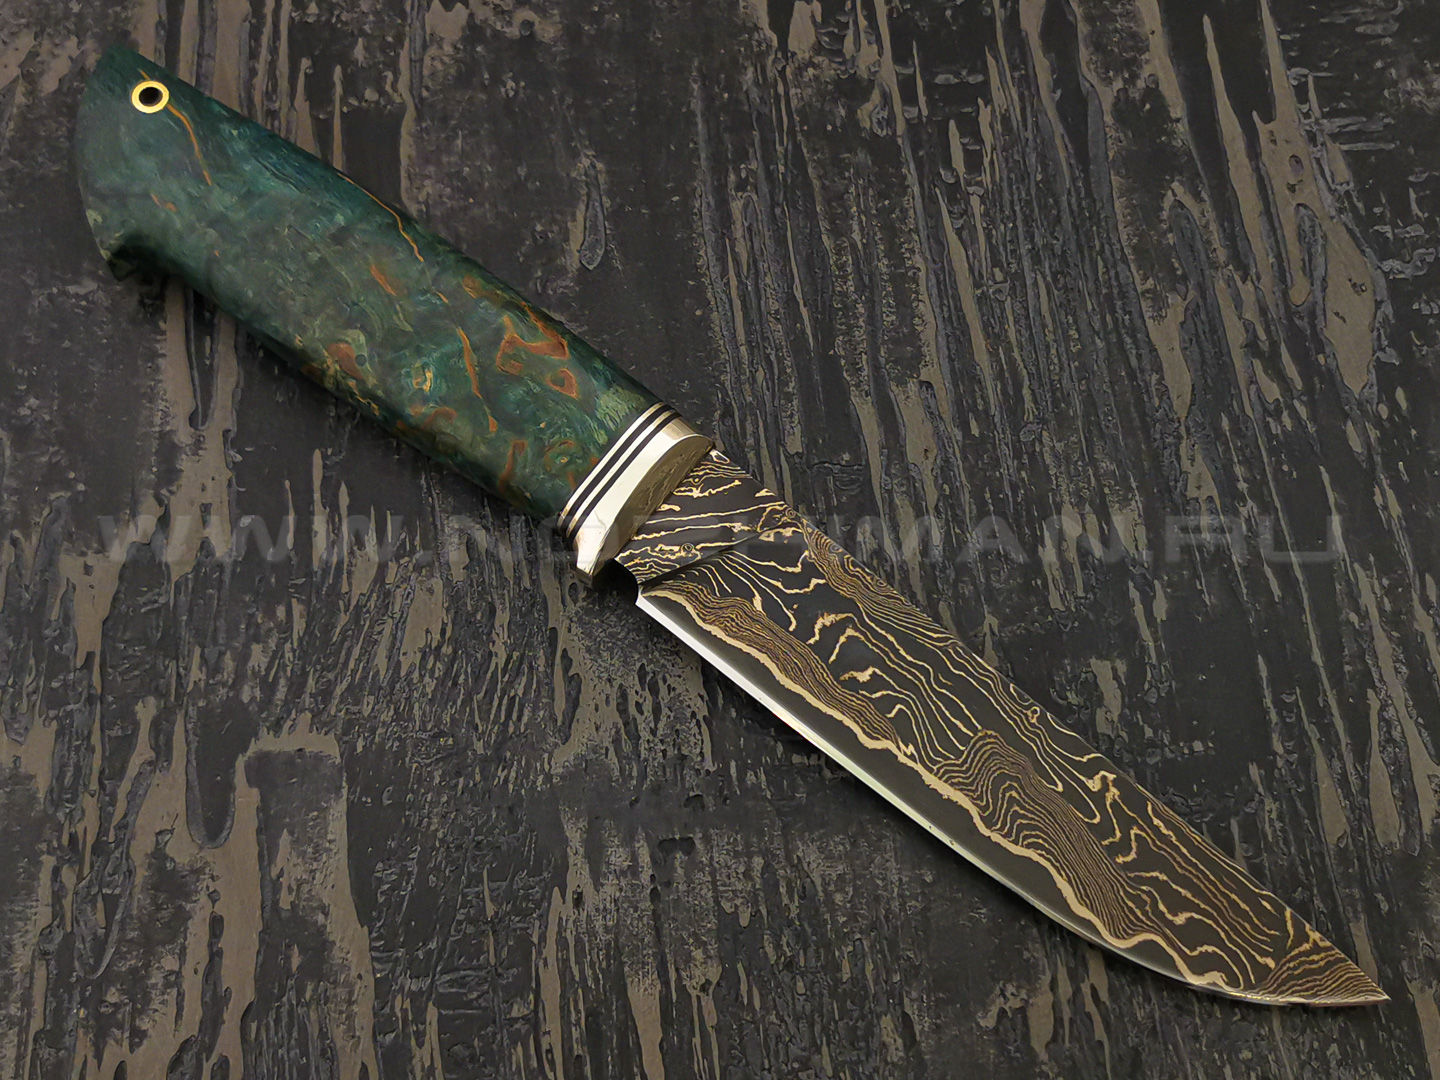 Нож "Ладья-2" дамасская сталь, рукоять карельская береза, мельхиор (Тов. Завьялова)